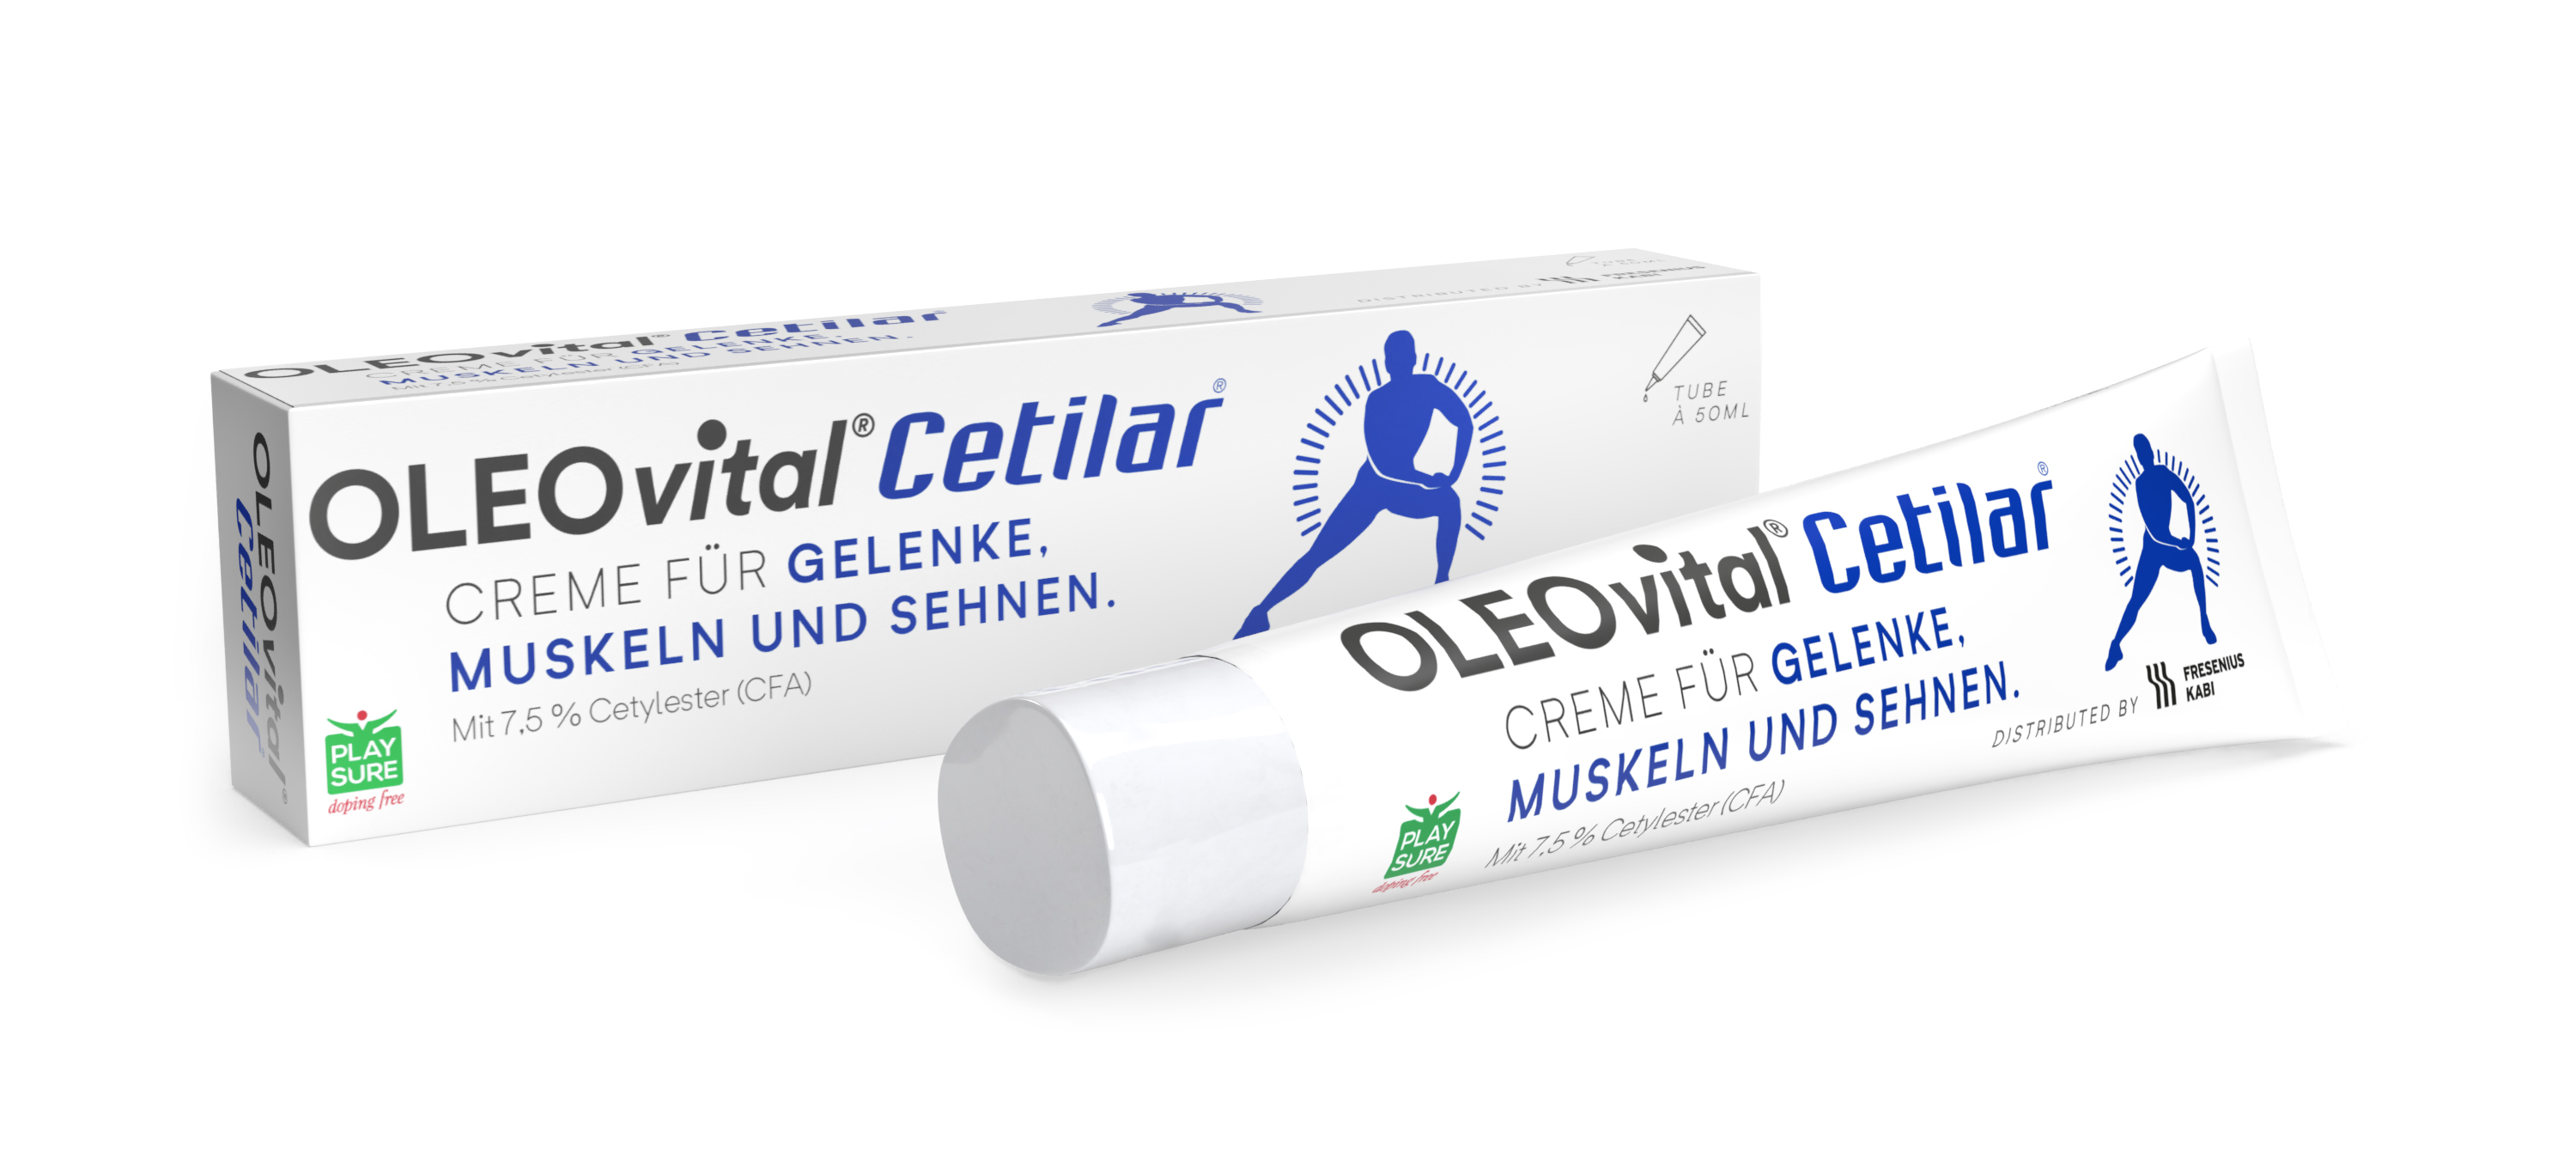 OLEOvital® Cetilar®  Creme für Gelenke, Muskeln und Sehne